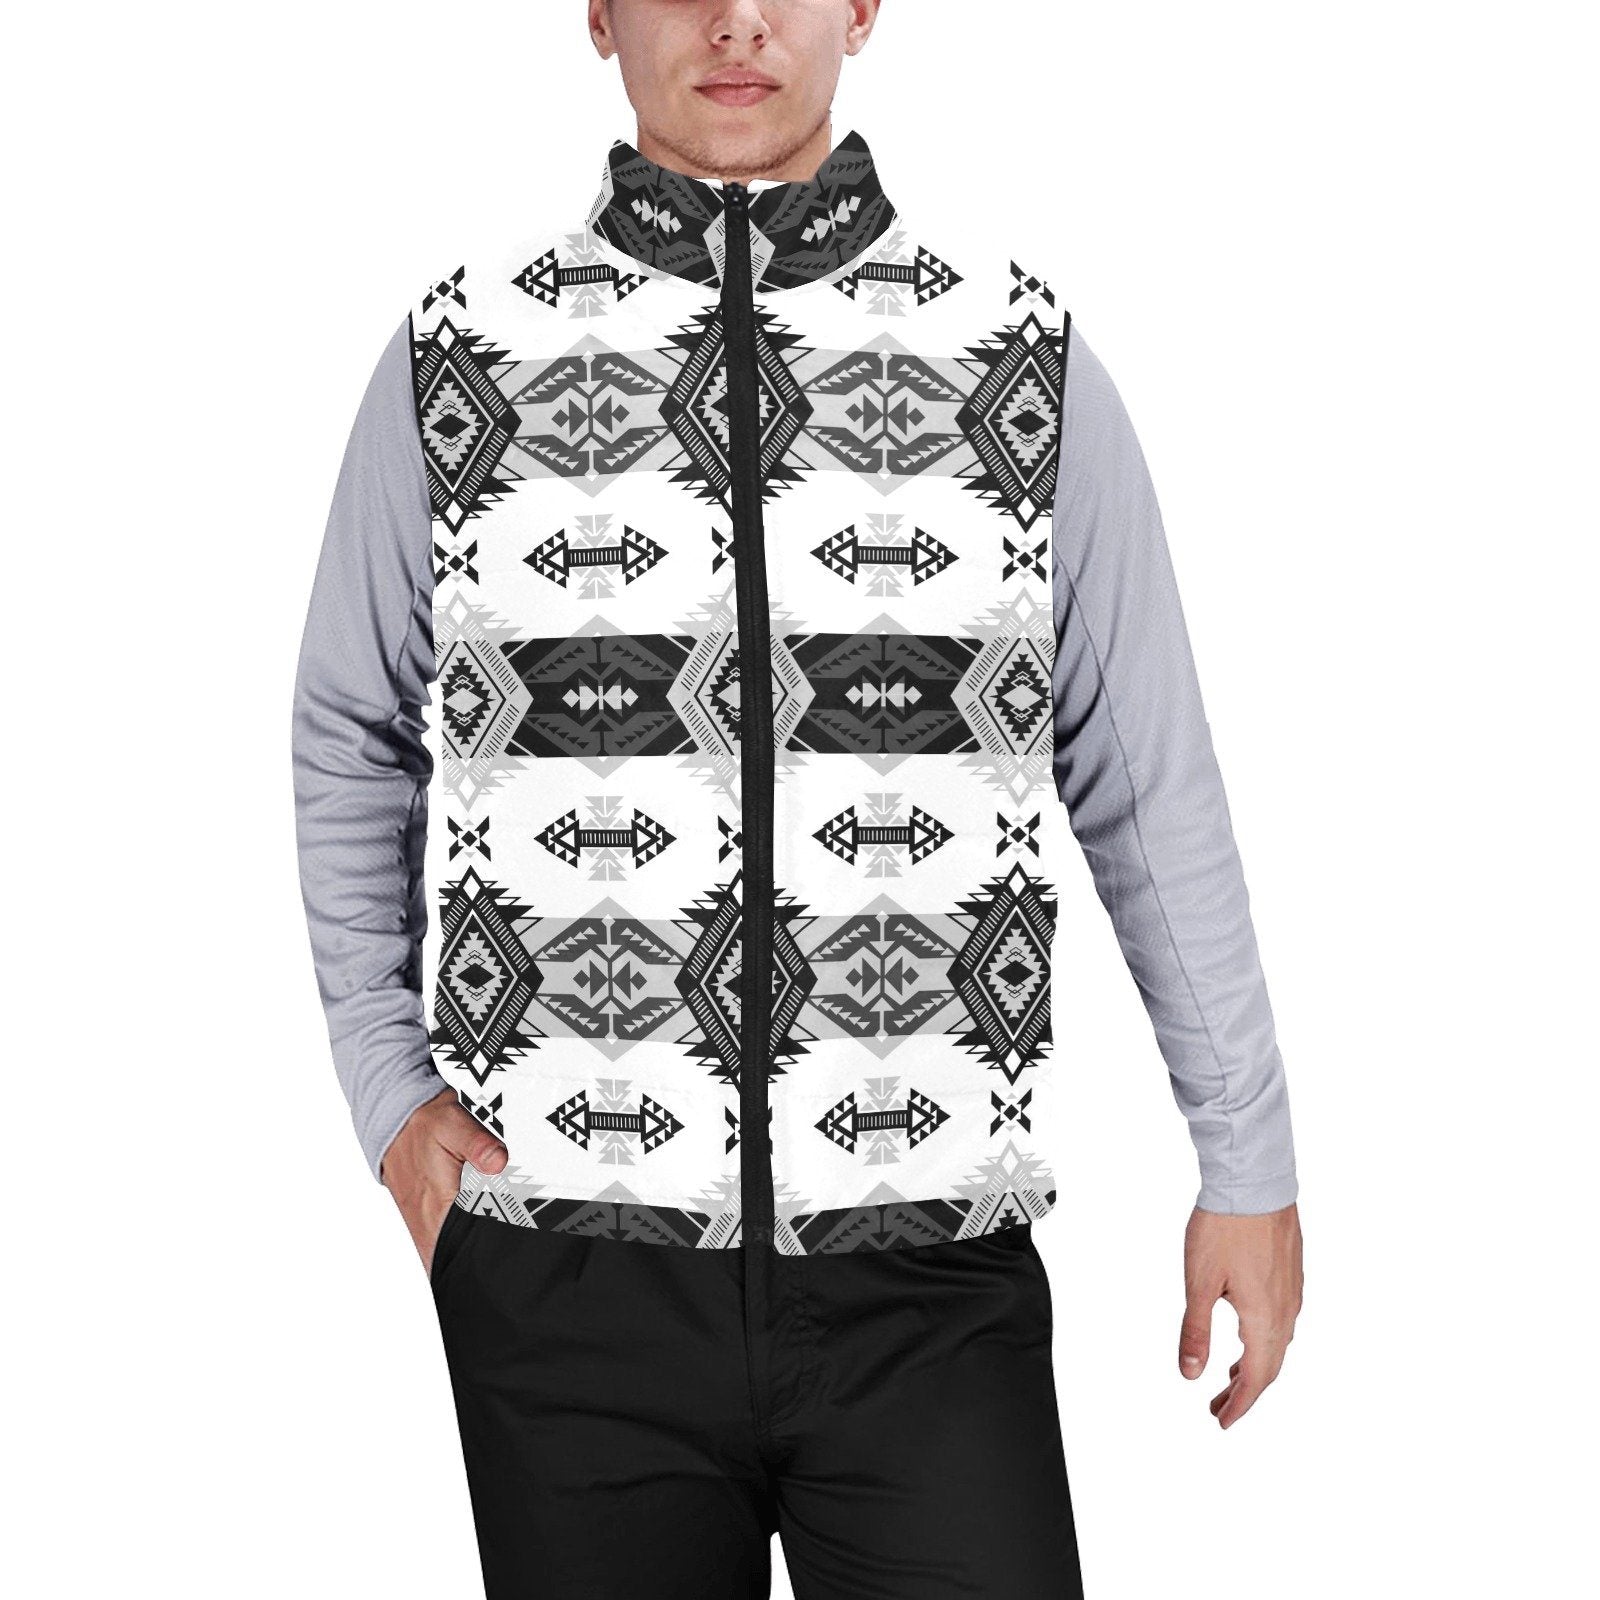 Sovereign Nation Black and White Men's Padded Vest Jacket (Model H44) Men's Padded Vest Jacket (H44) e-joyer 